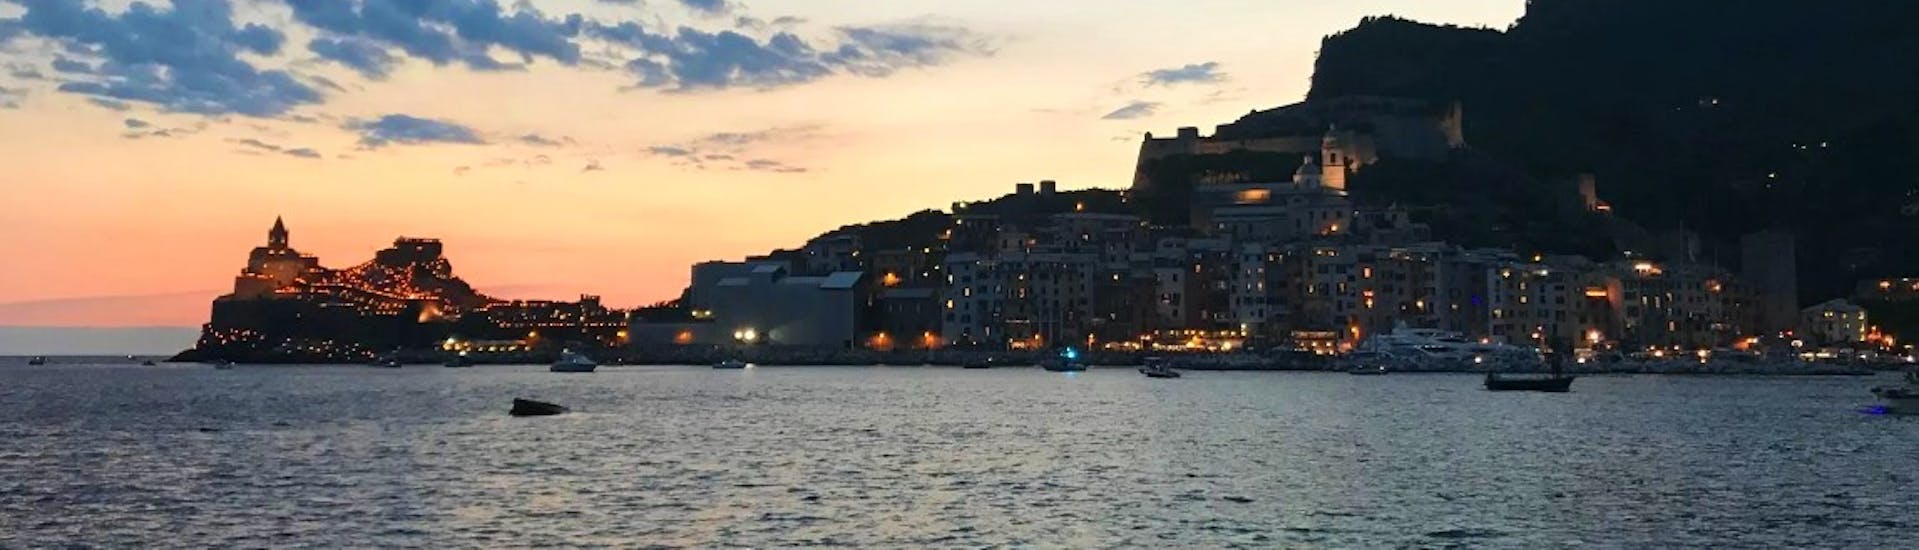 Blick auf den Golfo dei Poeti nach Sonnenuntergang während der Bootstour mit Aperitif bei Sonnenuntergang von HopHop Boat La Spezia.